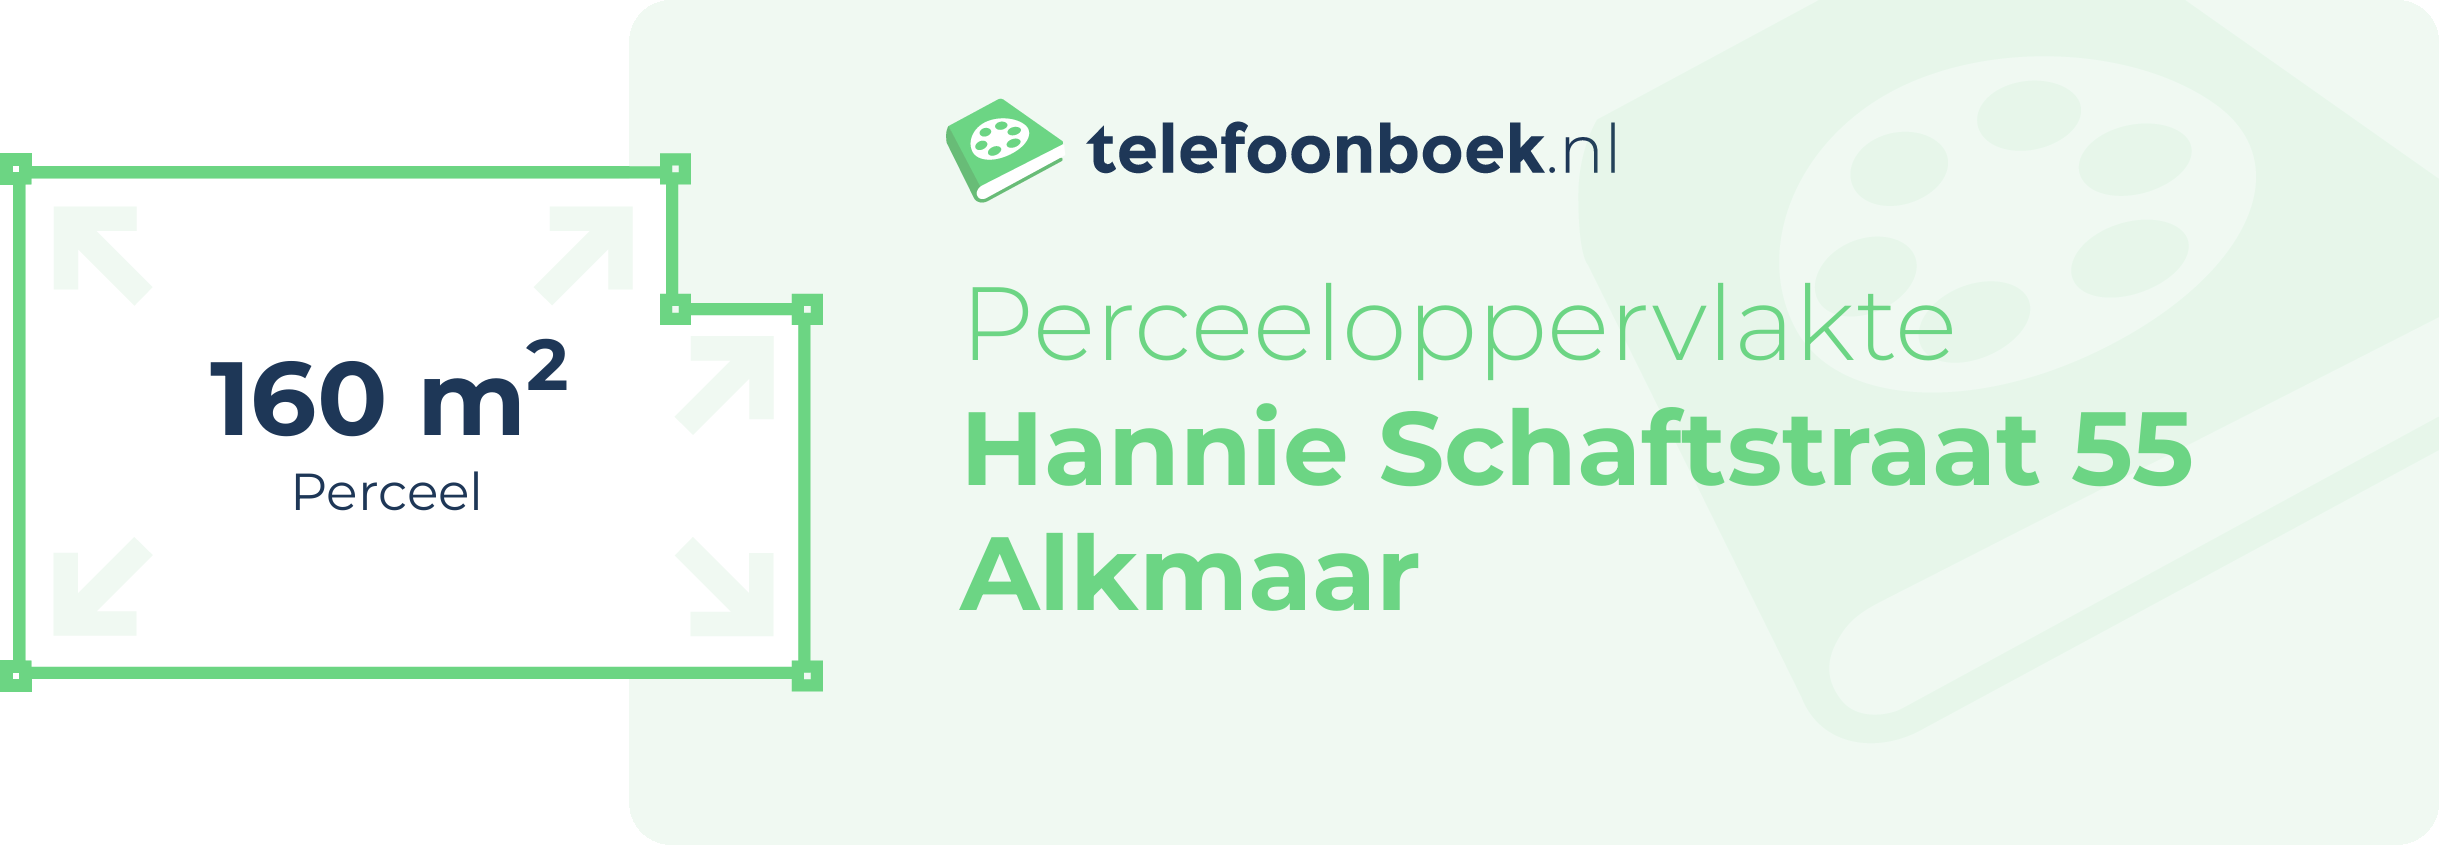 Perceeloppervlakte Hannie Schaftstraat 55 Alkmaar